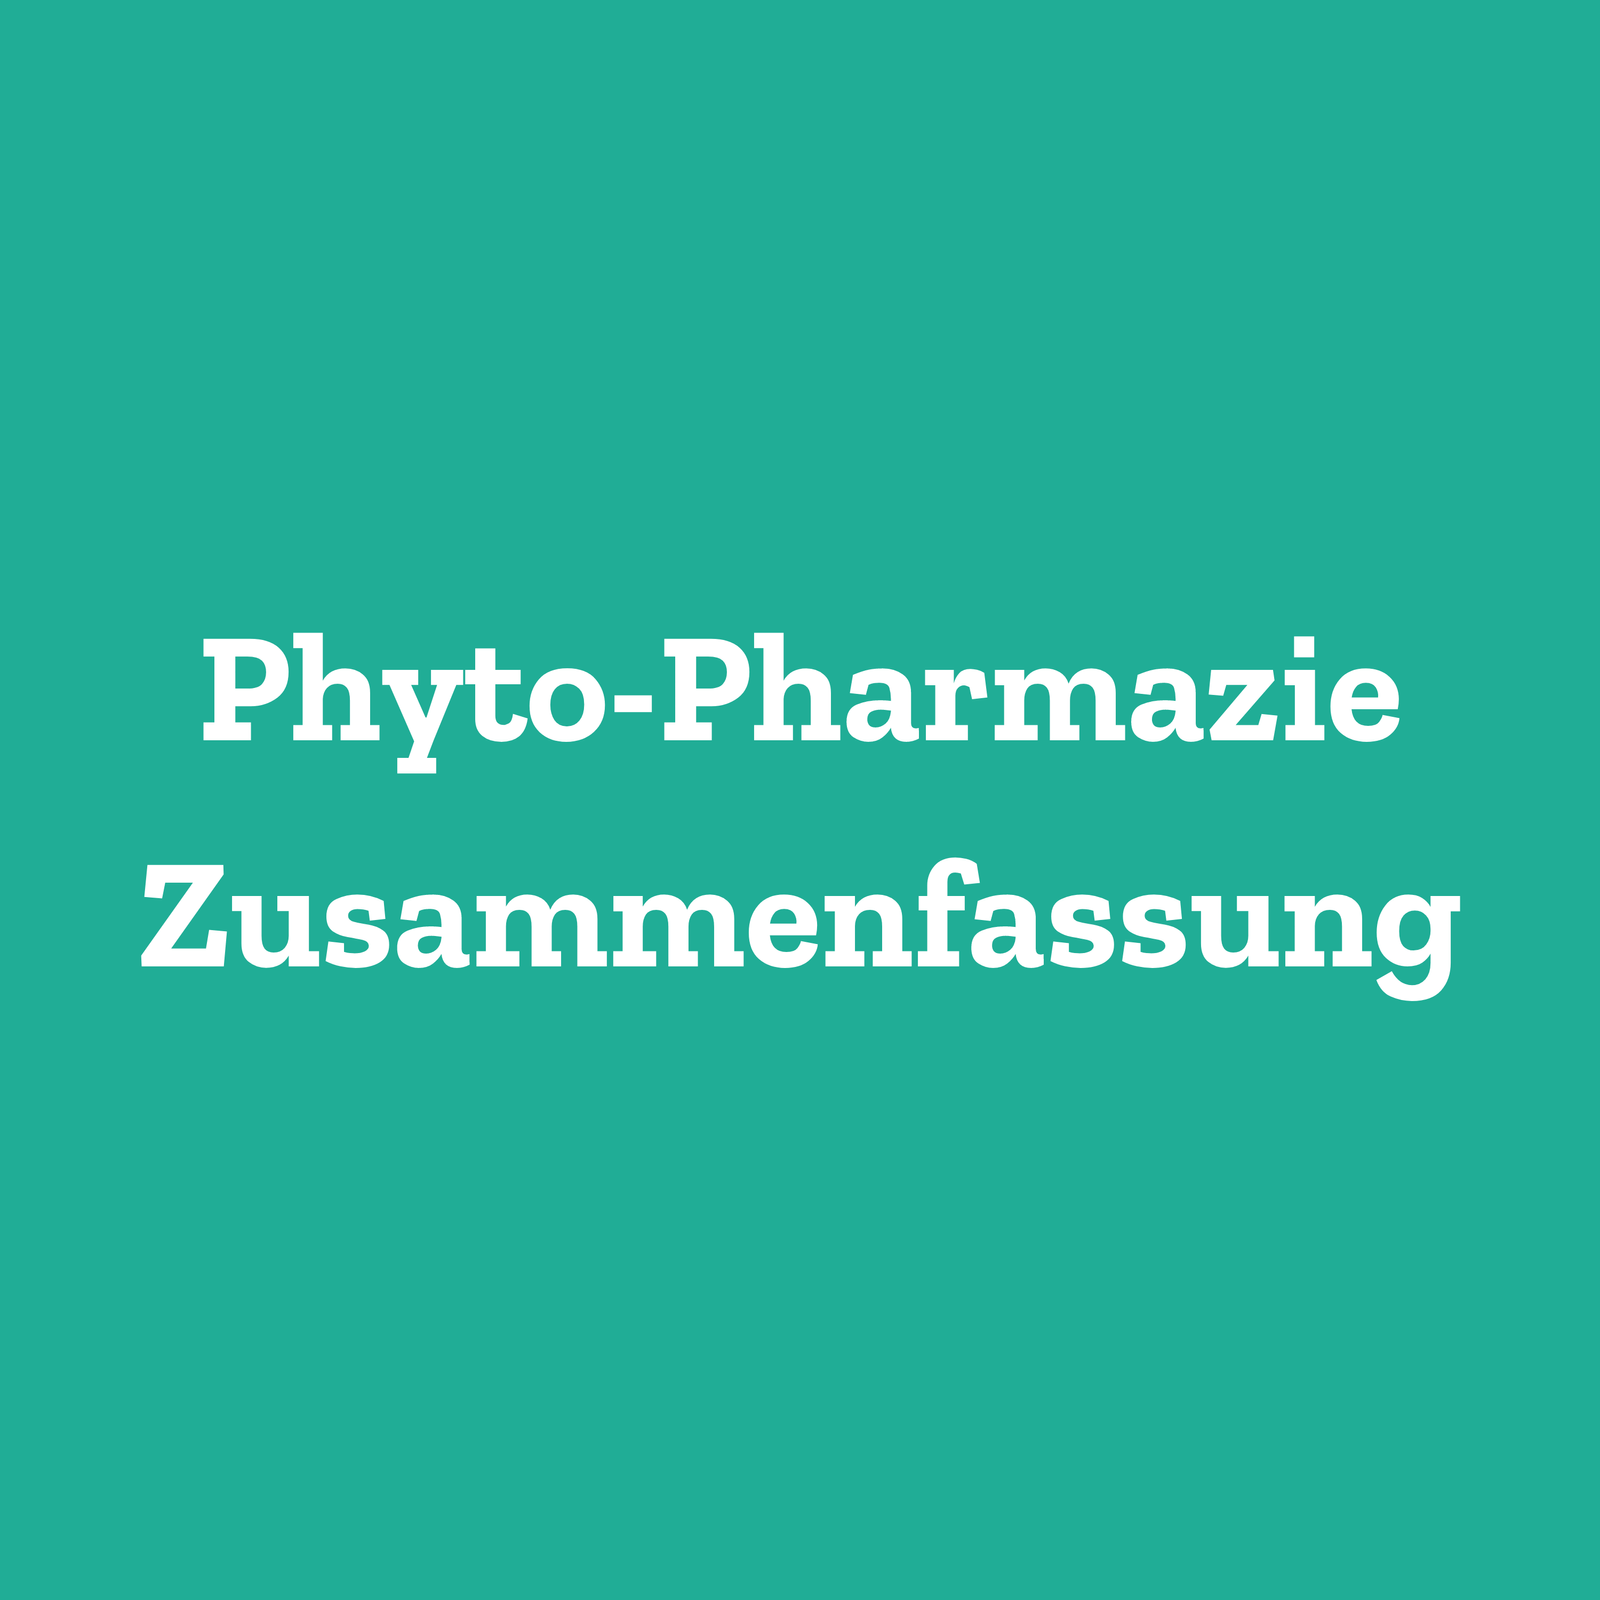 Phyto-Pharmazie Zusammenfassung